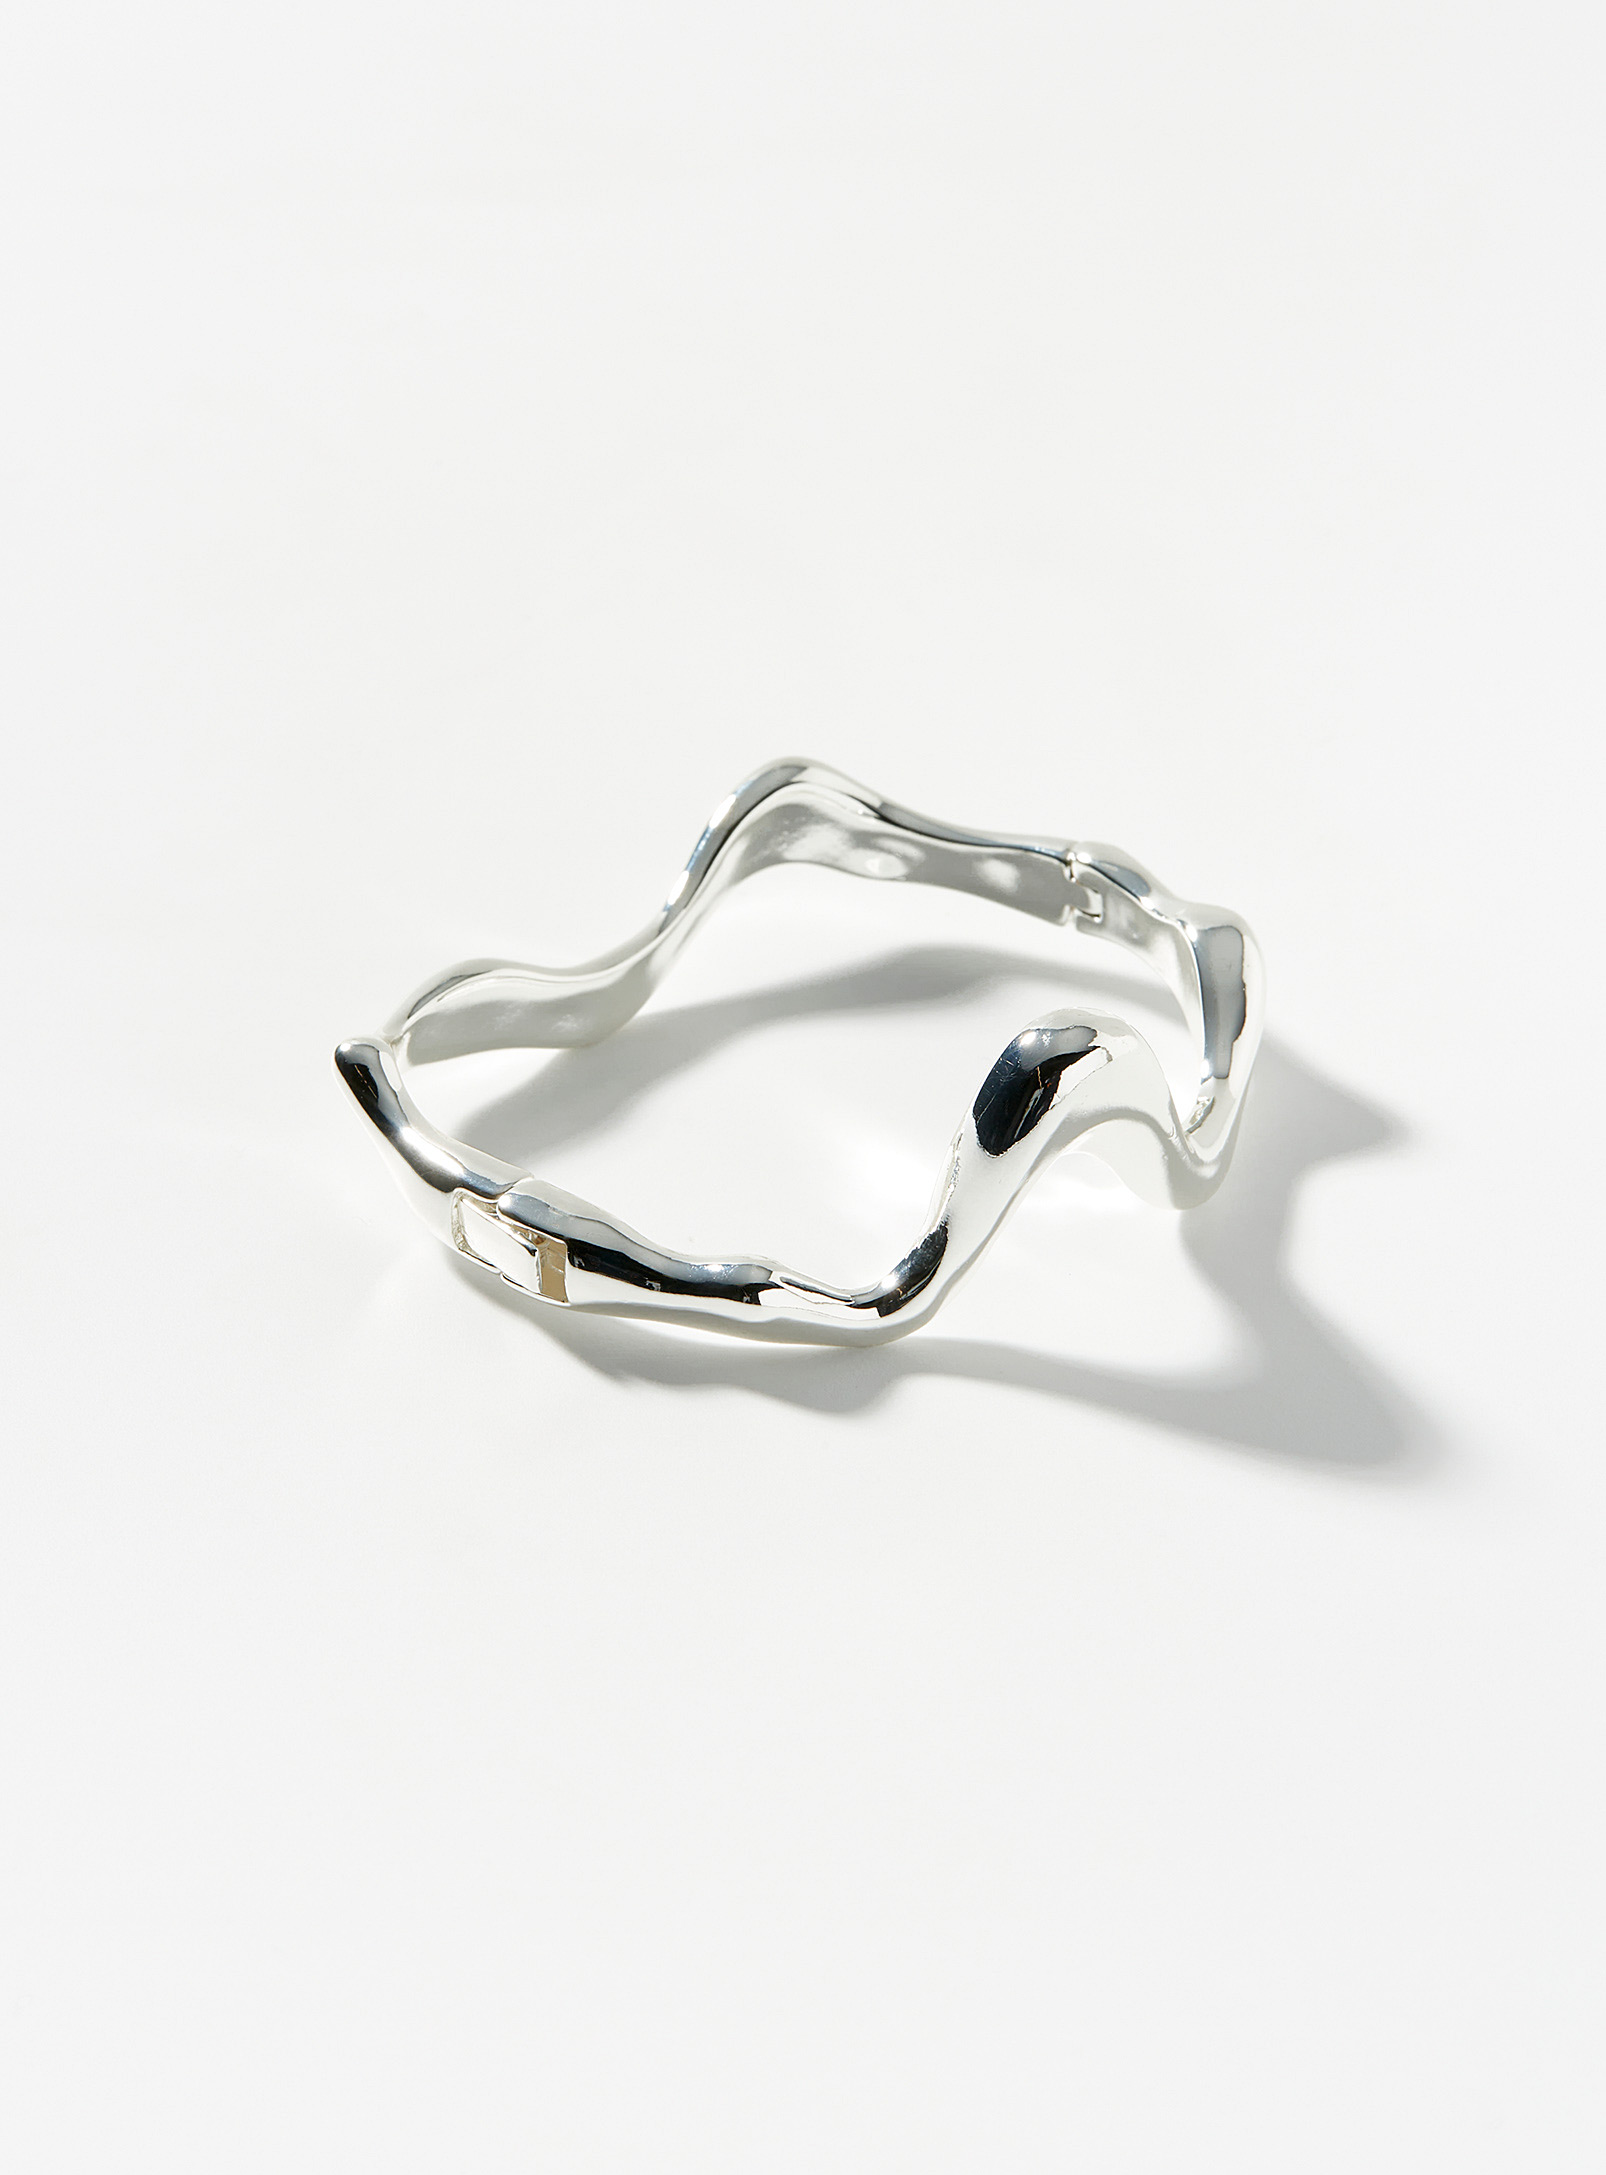 Pilgrim - Women's Curved rigid bracelet